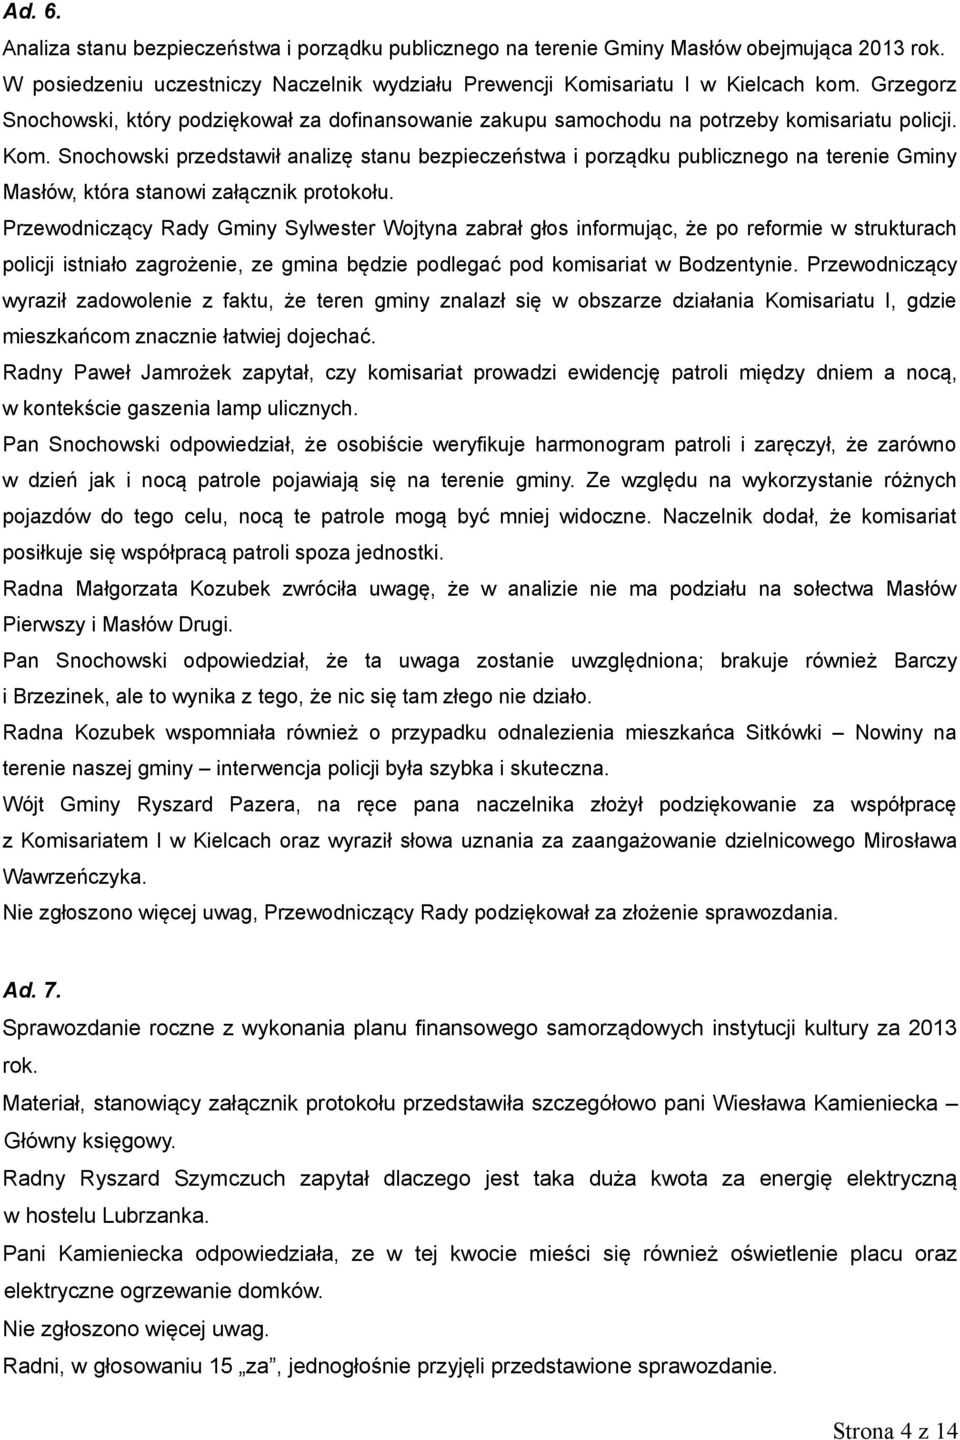 Snochowski przedstawił analizę stanu bezpieczeństwa i porządku publicznego na terenie Gminy Masłów, która stanowi załącznik protokołu.